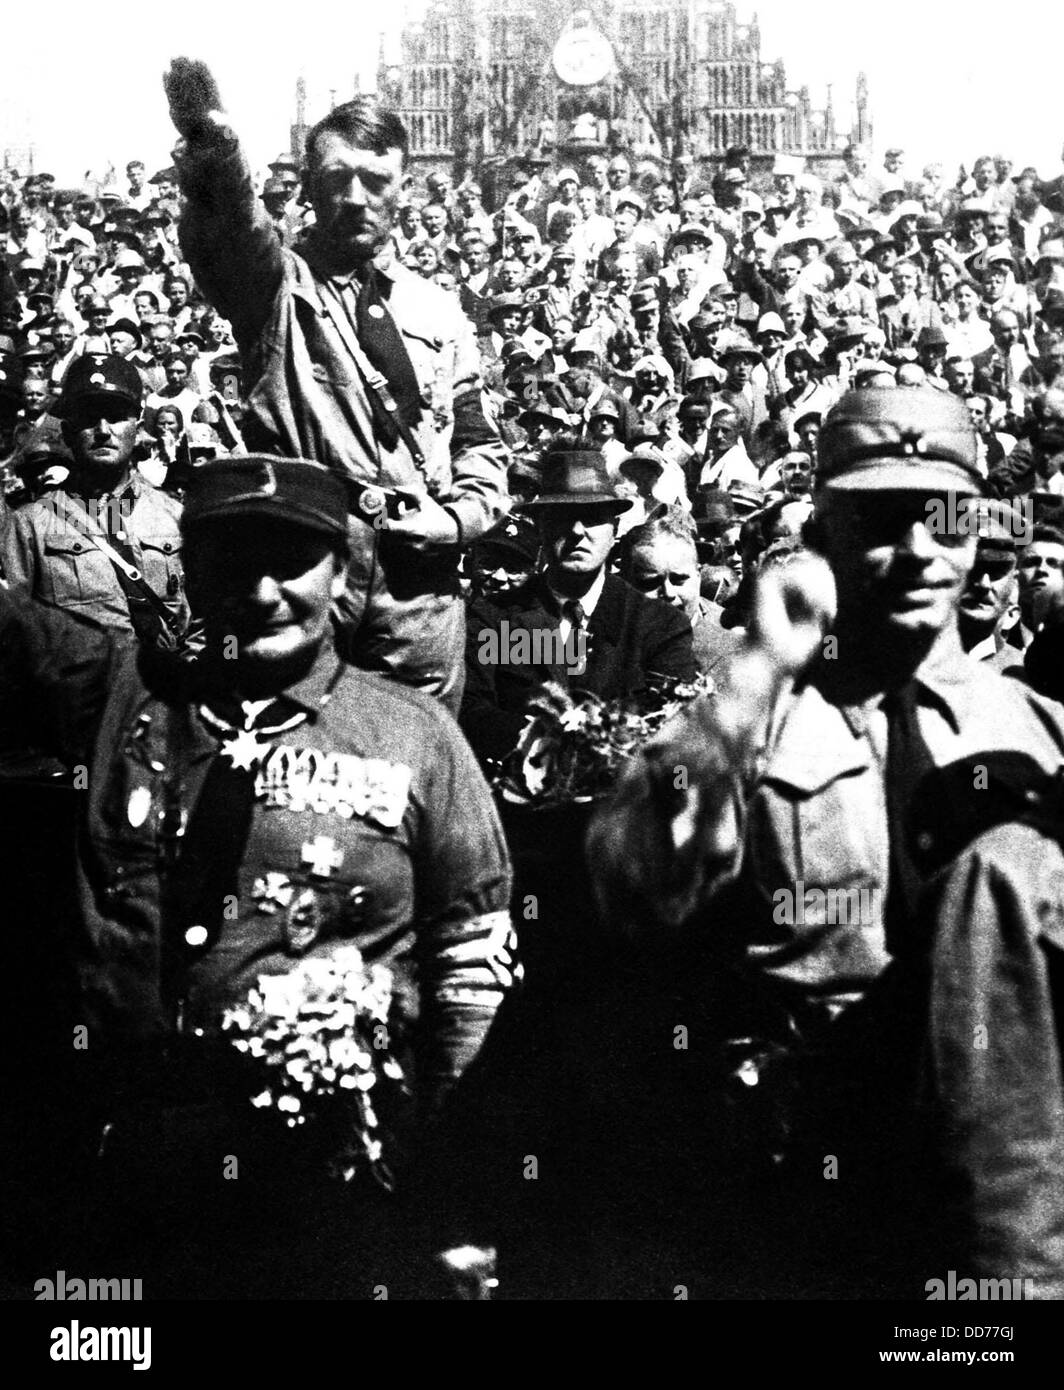 Hitler bei NSDAP-Rallye, Nürnberg, ca. 1928. Herman Göring ist links im Vordergrund. Foto von Heinrich Hoffmann. Stockfoto